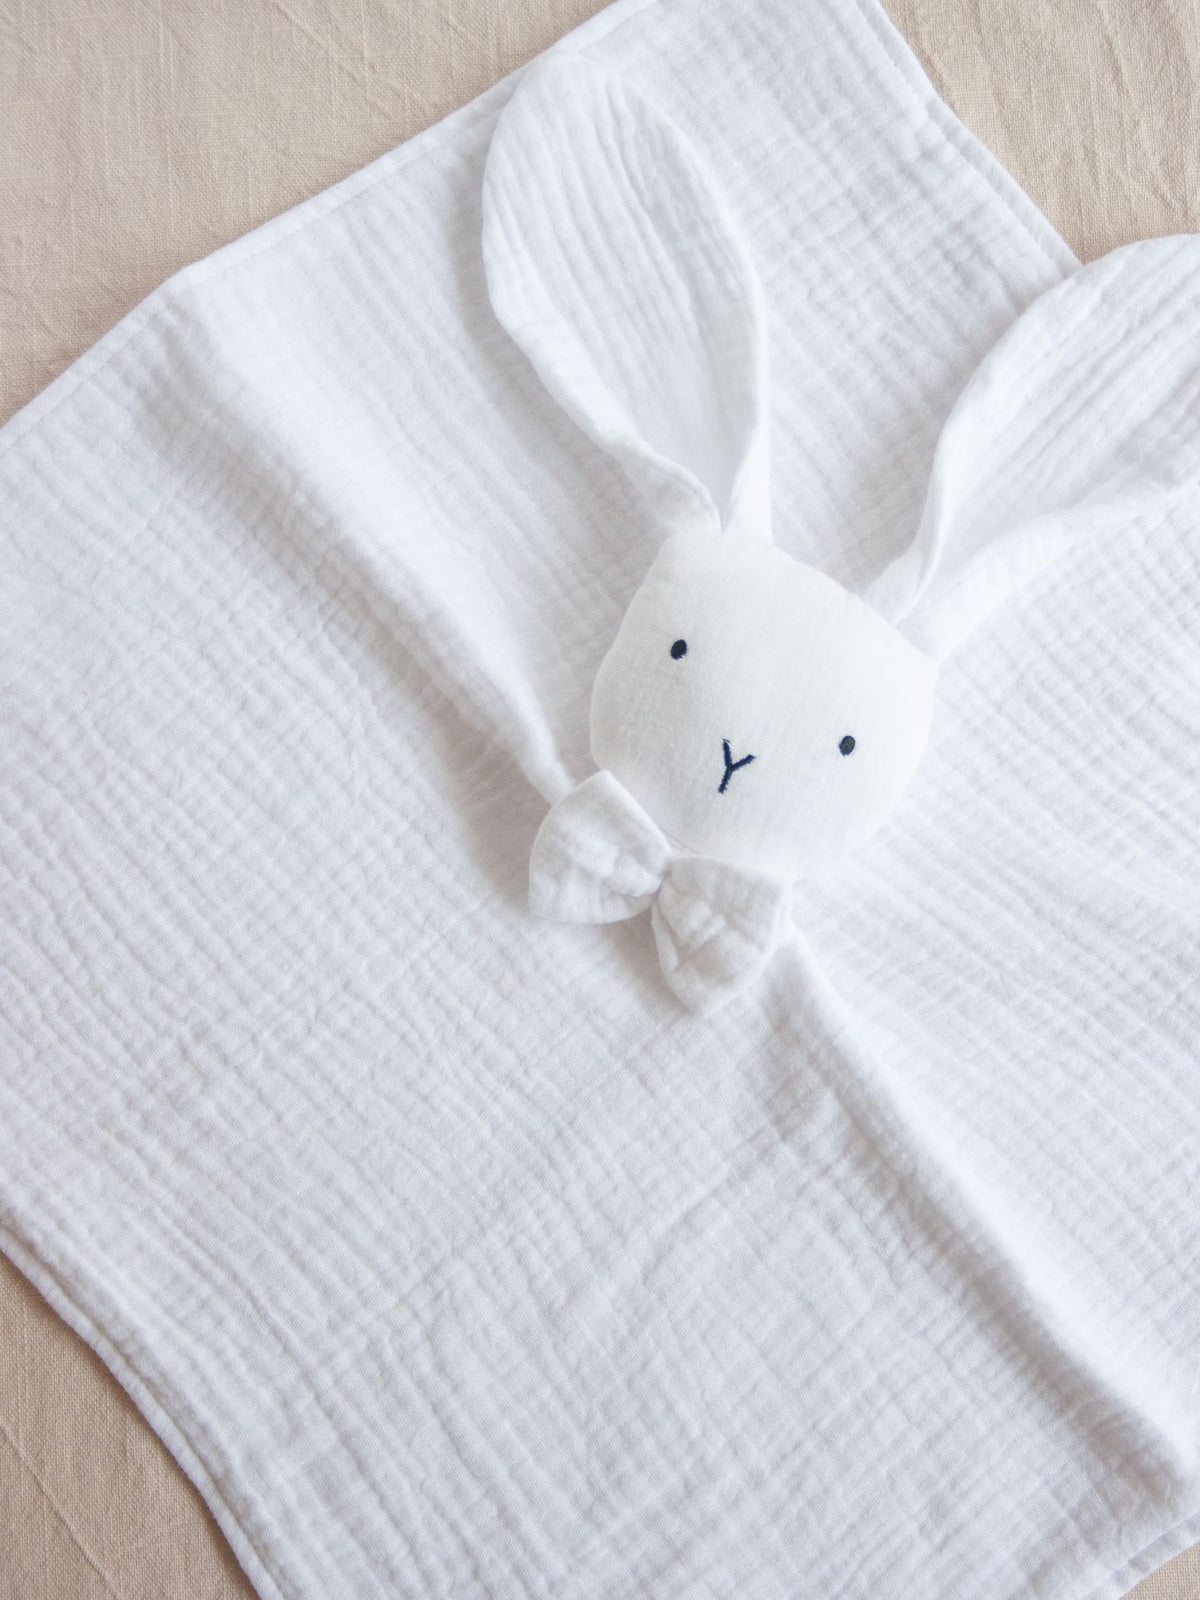 Organic Cotton Snuggle Bunny - White